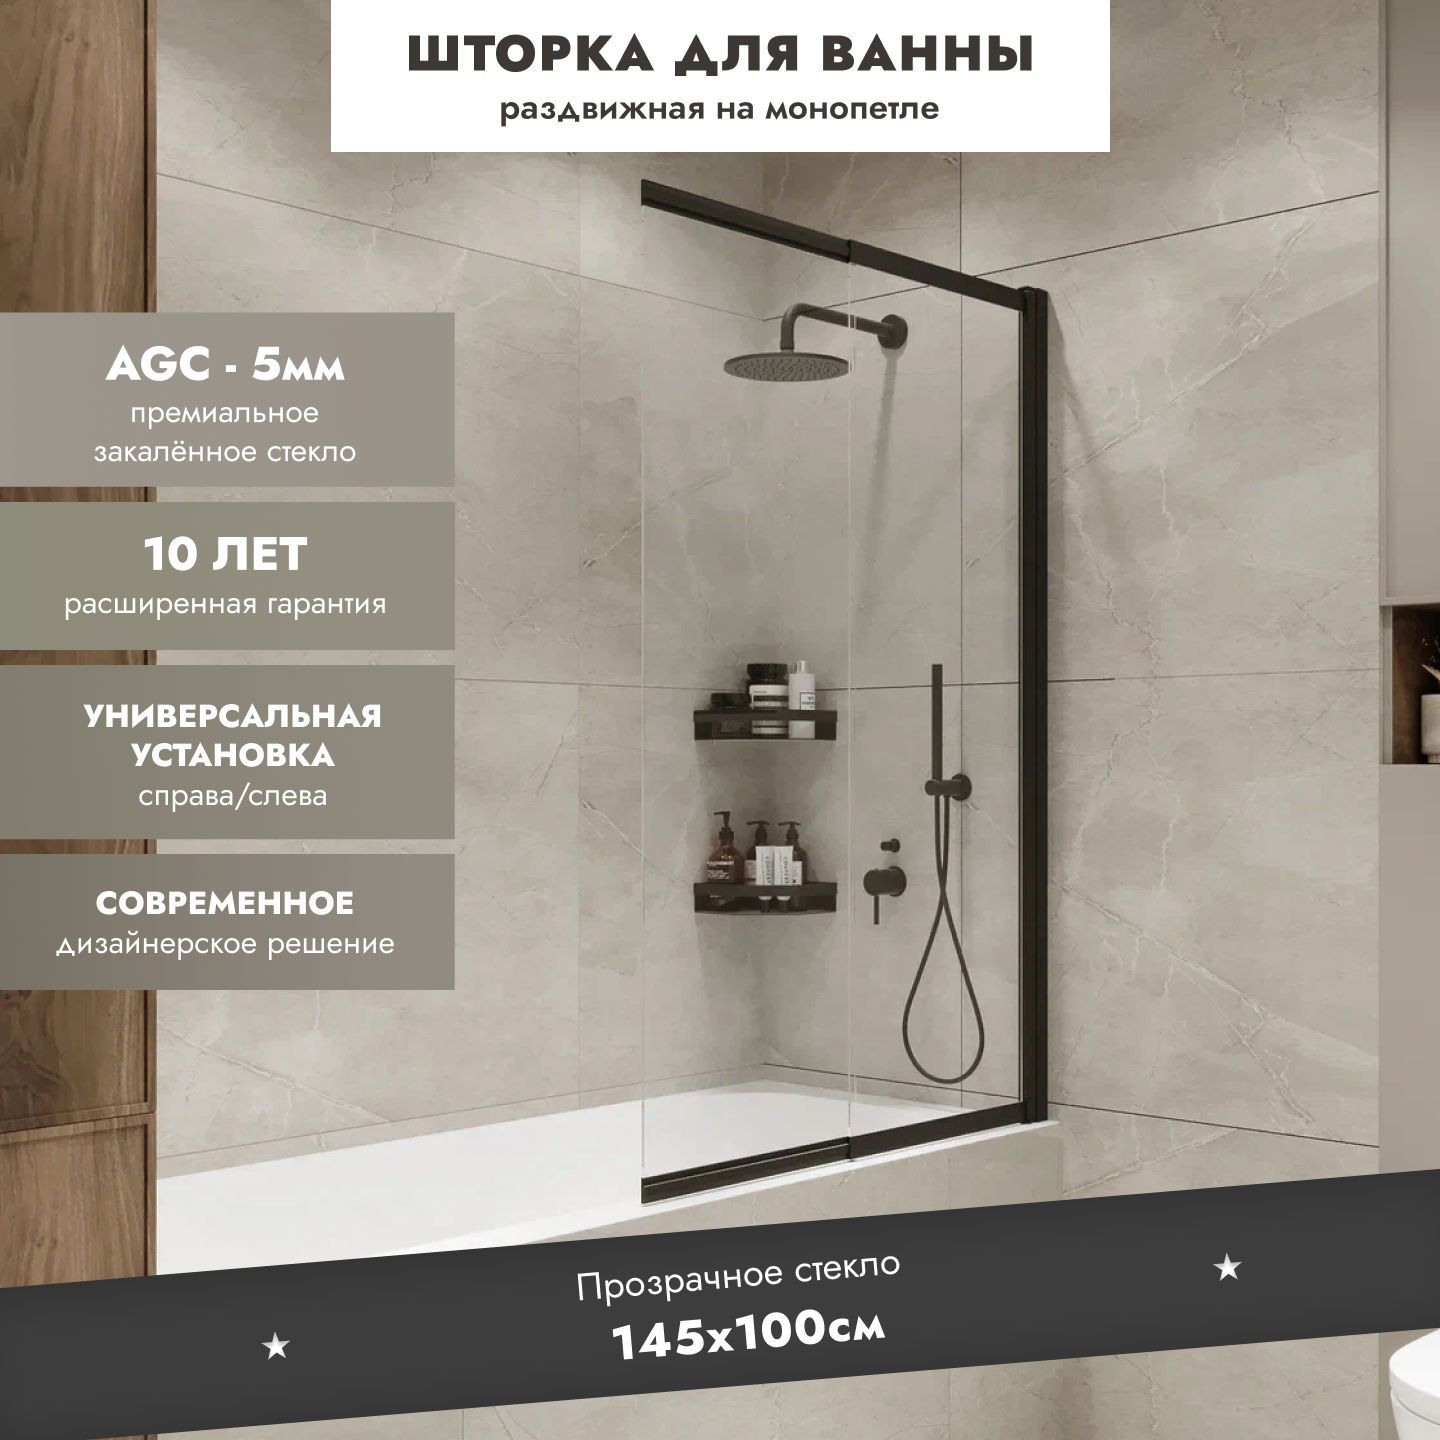 Купить раздвижной экран под ванну в Томске